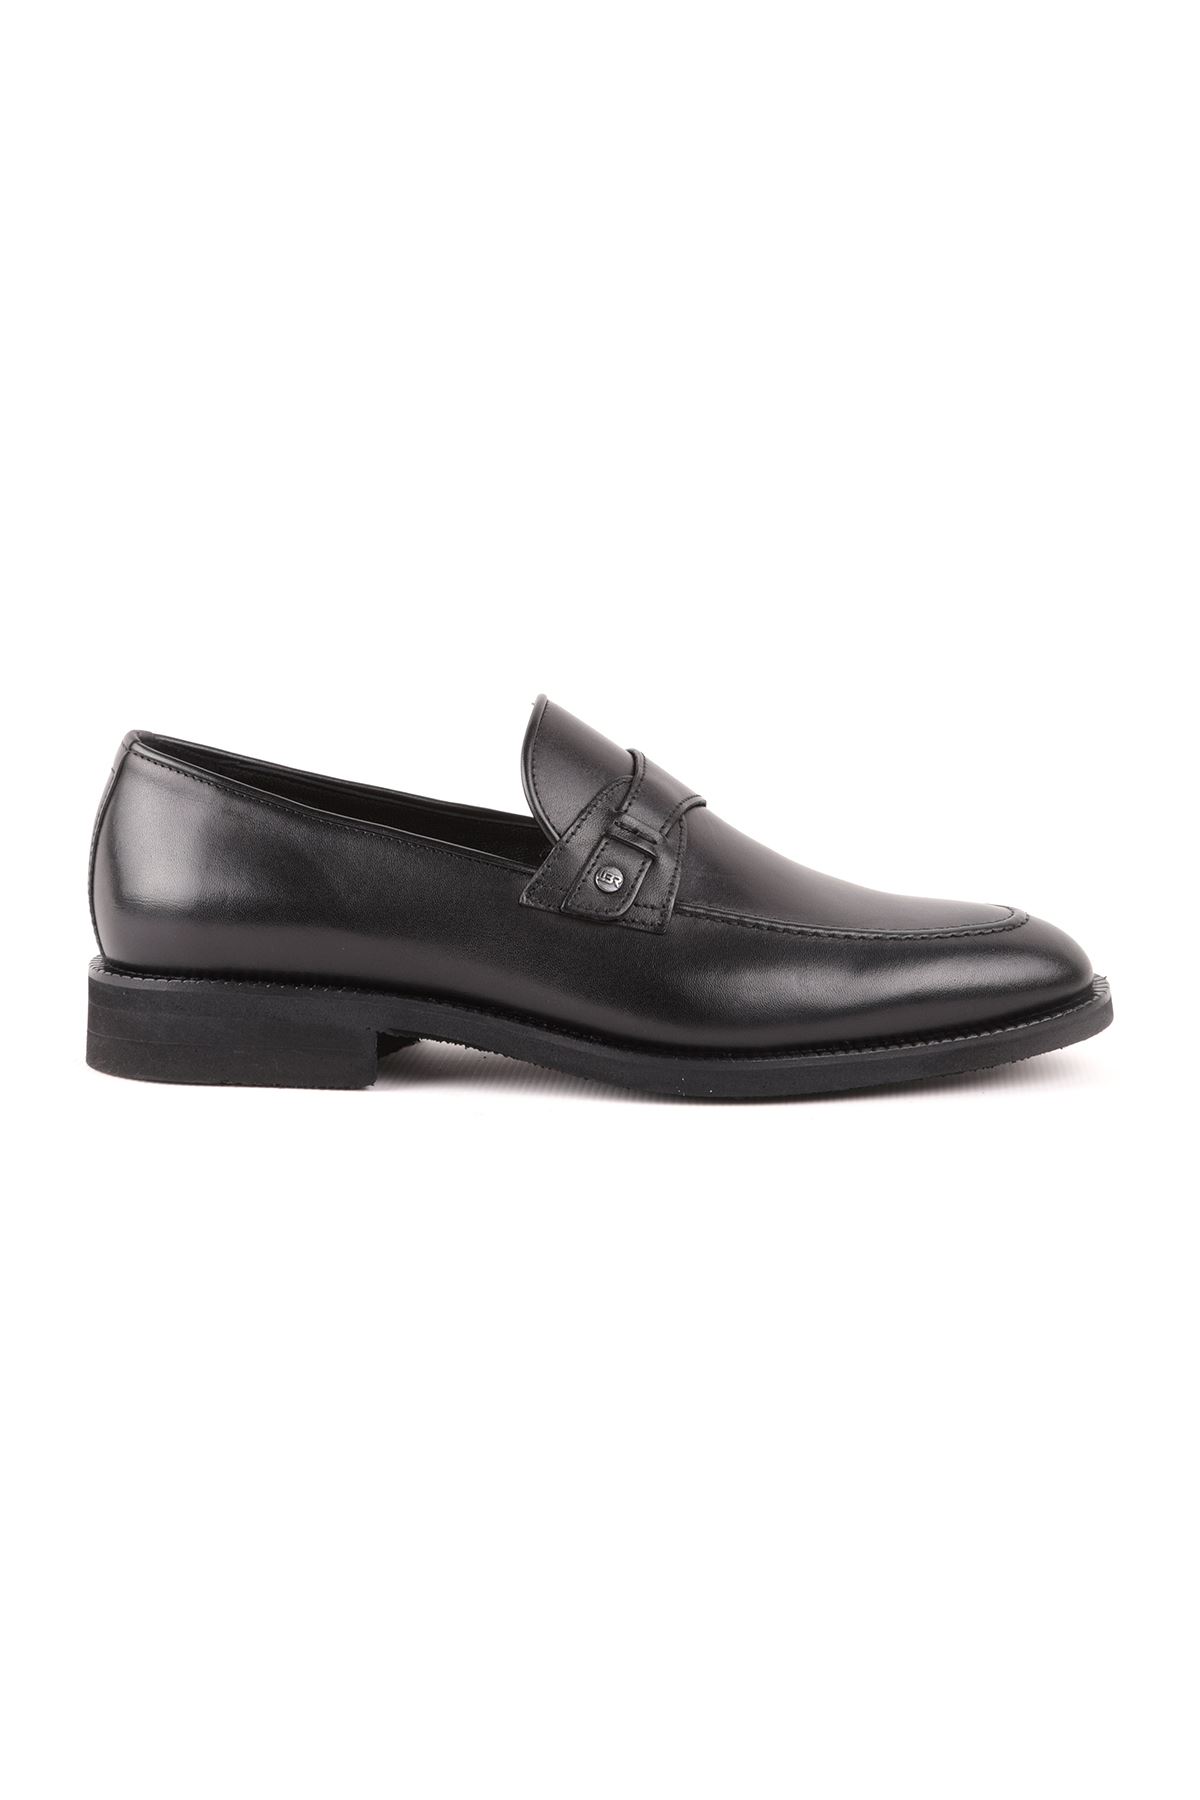 Libero L4784 Siyah Klasik Erkek Ayakkabı